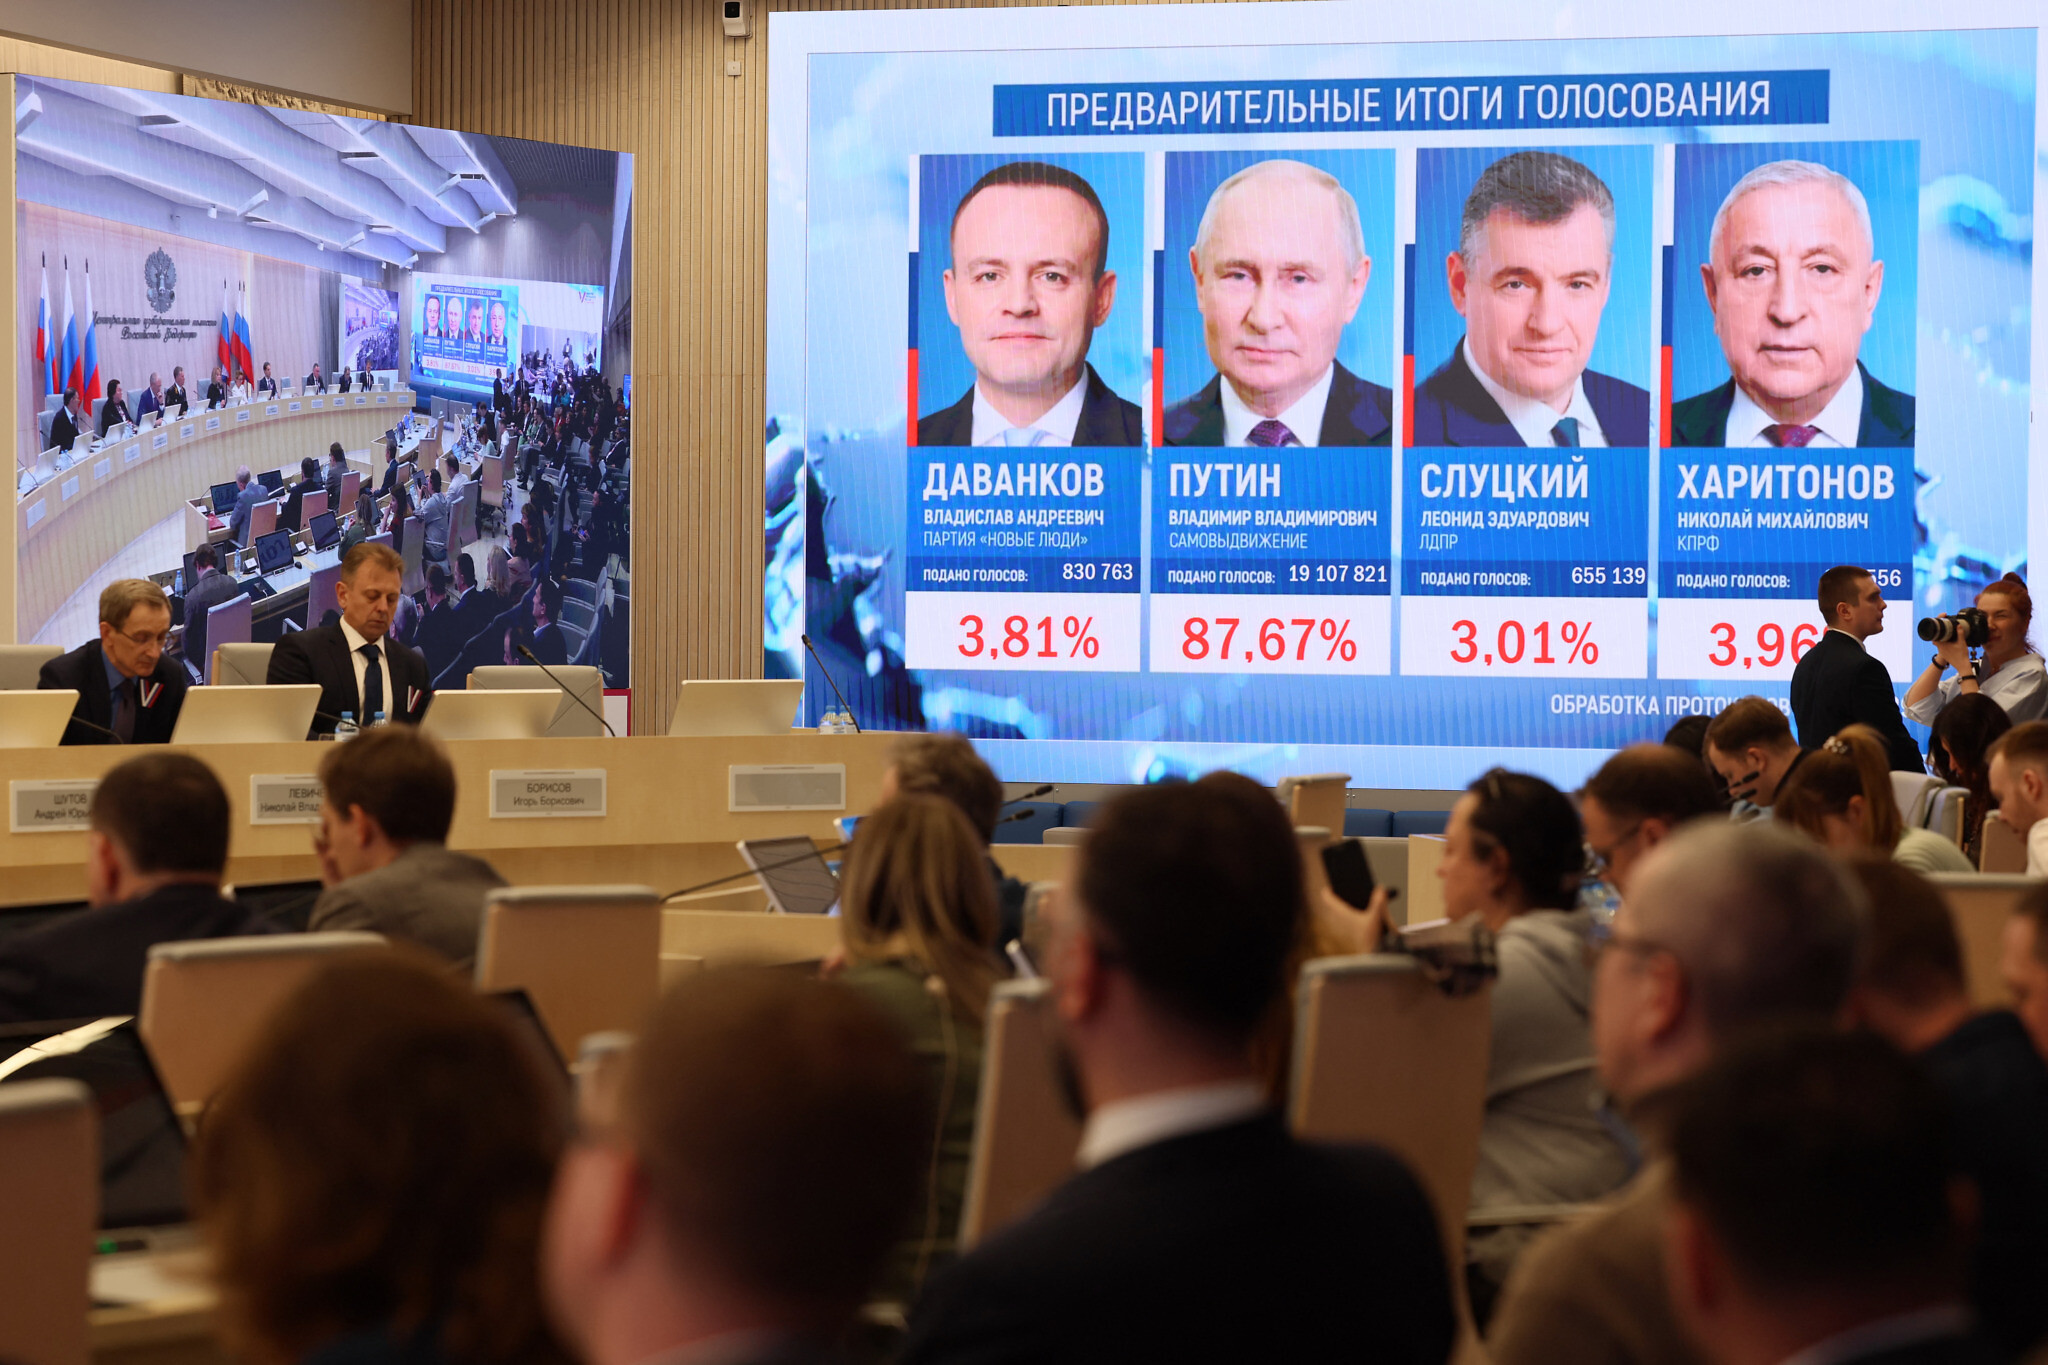 Putin incontra i candidati sconfitti e chiede di collaborare insieme in parlamento